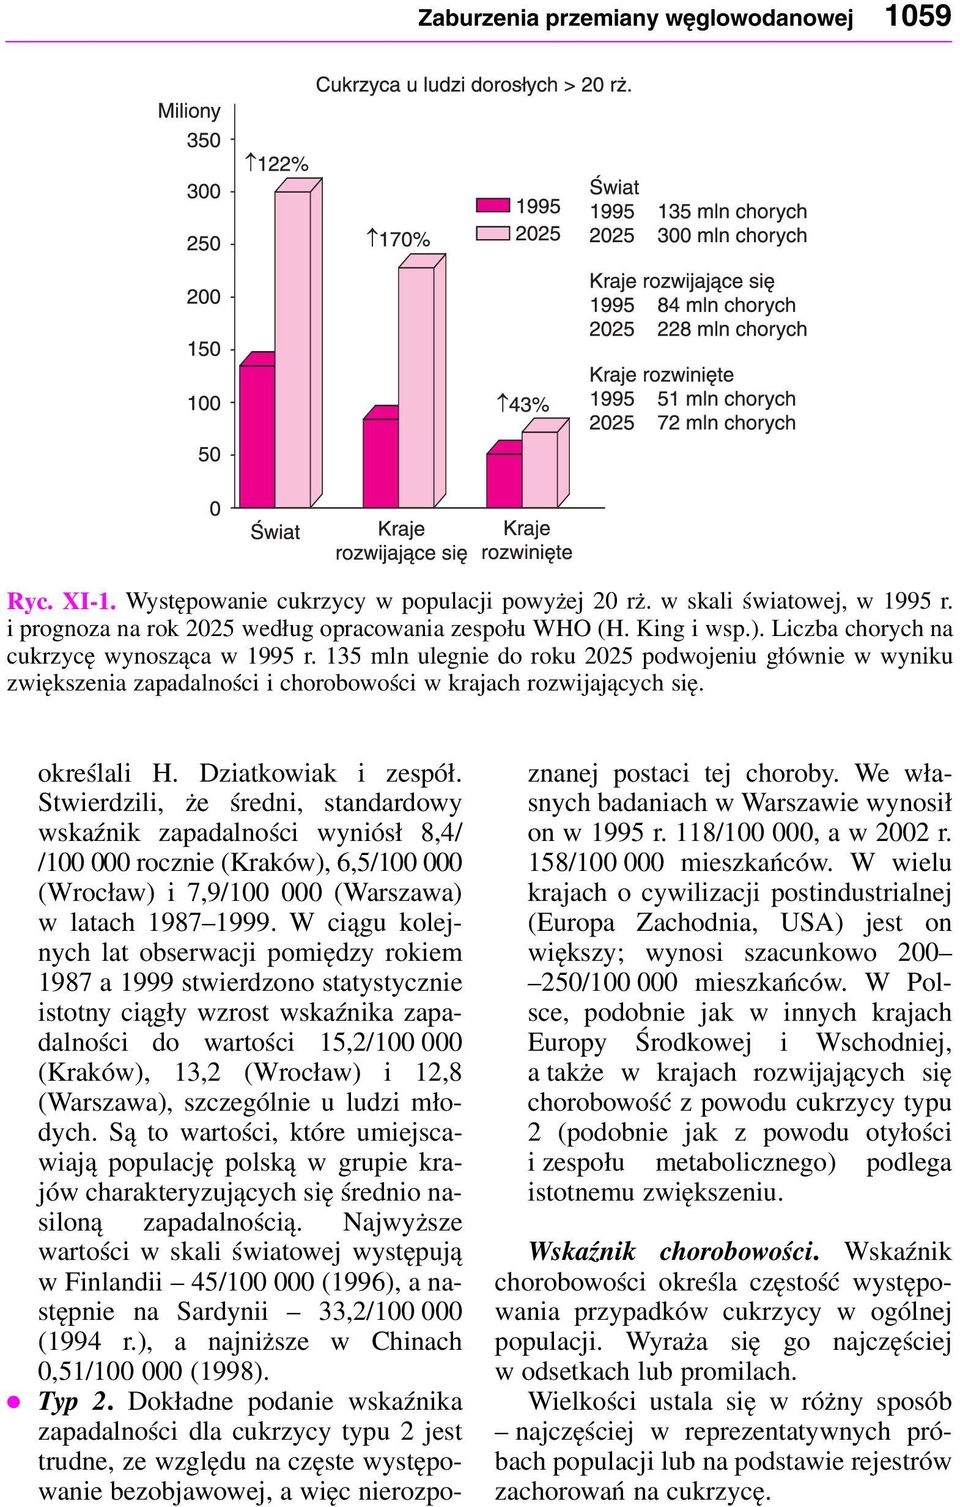 Stwierdili, że średni, standardowy wskaźnik apadalności wyniósł 8,4/ /100 000 rocnie (Kraków), 6,5/100 000 (Wrocław) i 7,9/100 000 (Warsawa) w latach 1987 1999.